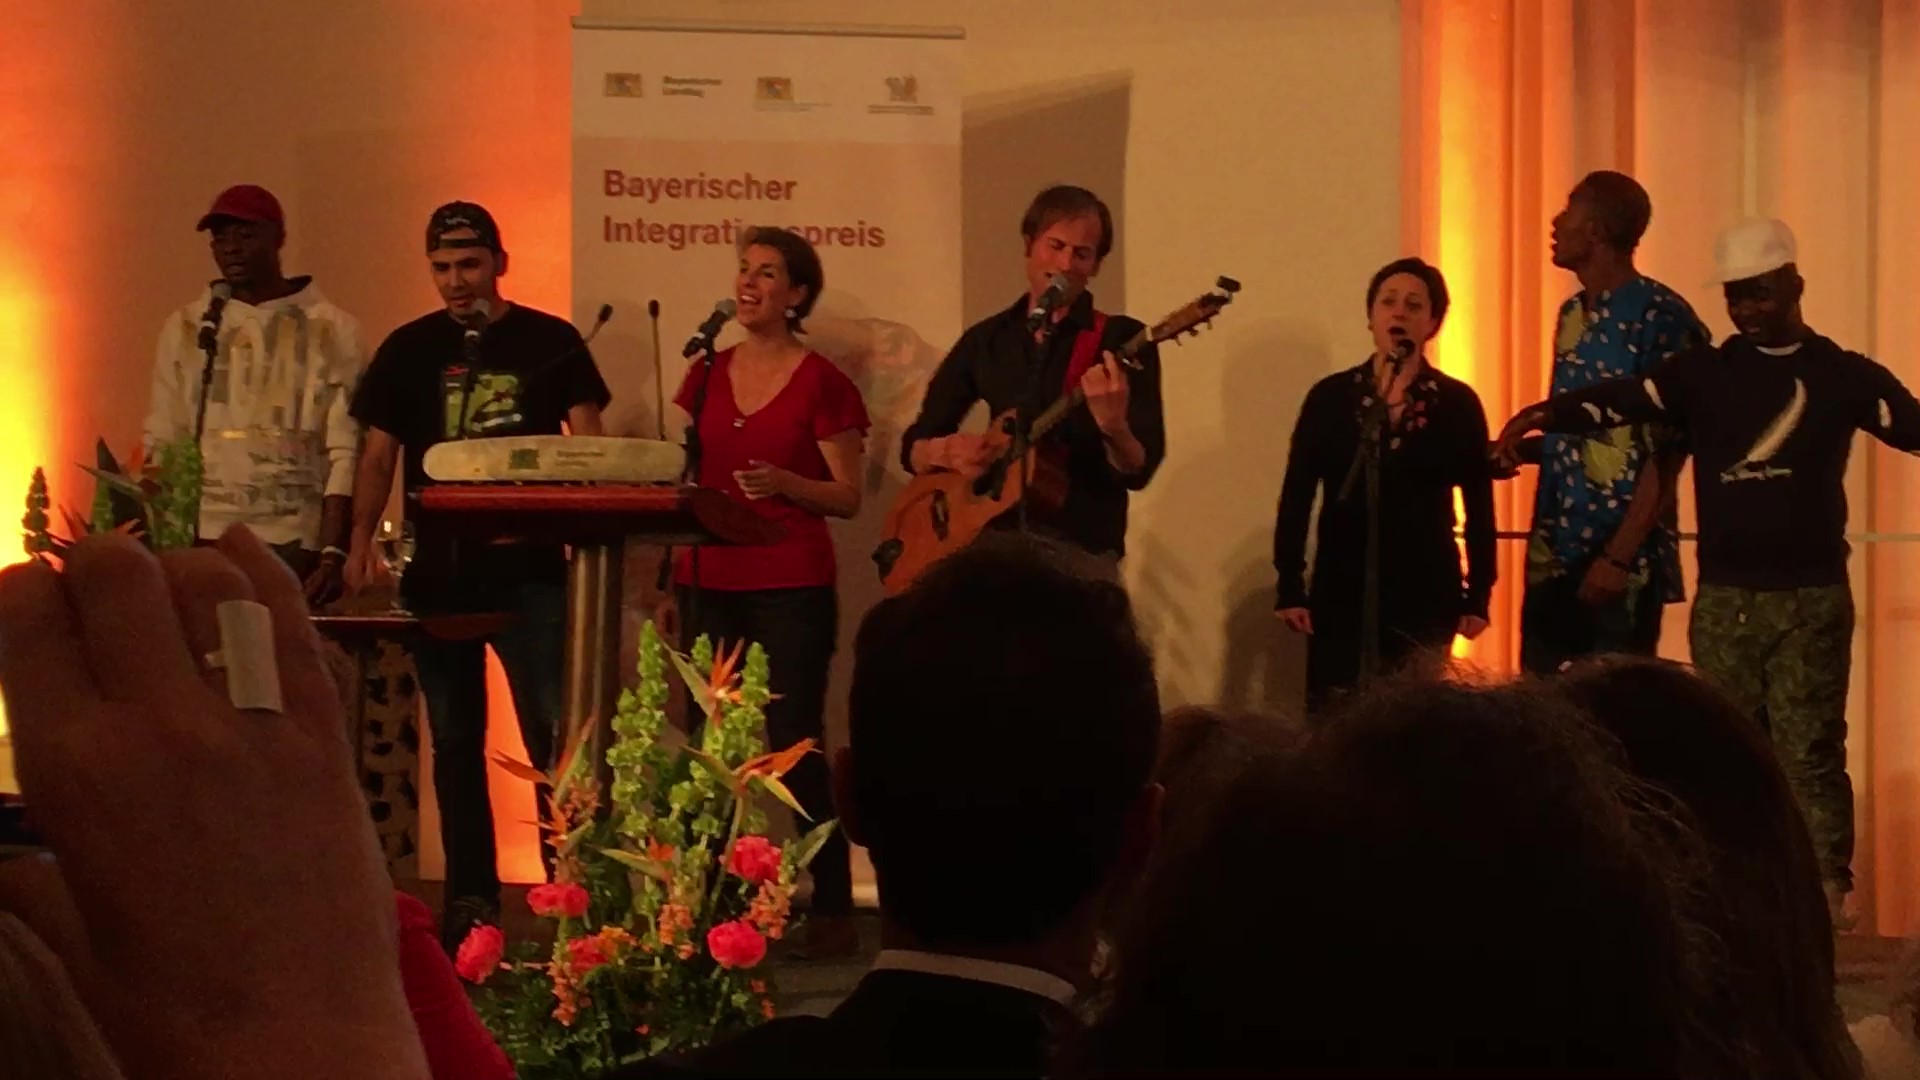 Mai 2018: Ein Auftritt anlässlich der Verleihung des Bayerischen Integrationspreises 2018 im Bayerischen Landtag. Gemeinsam mit dem Musiker und Songwriter Mathew James White, performen ehrenamtlich